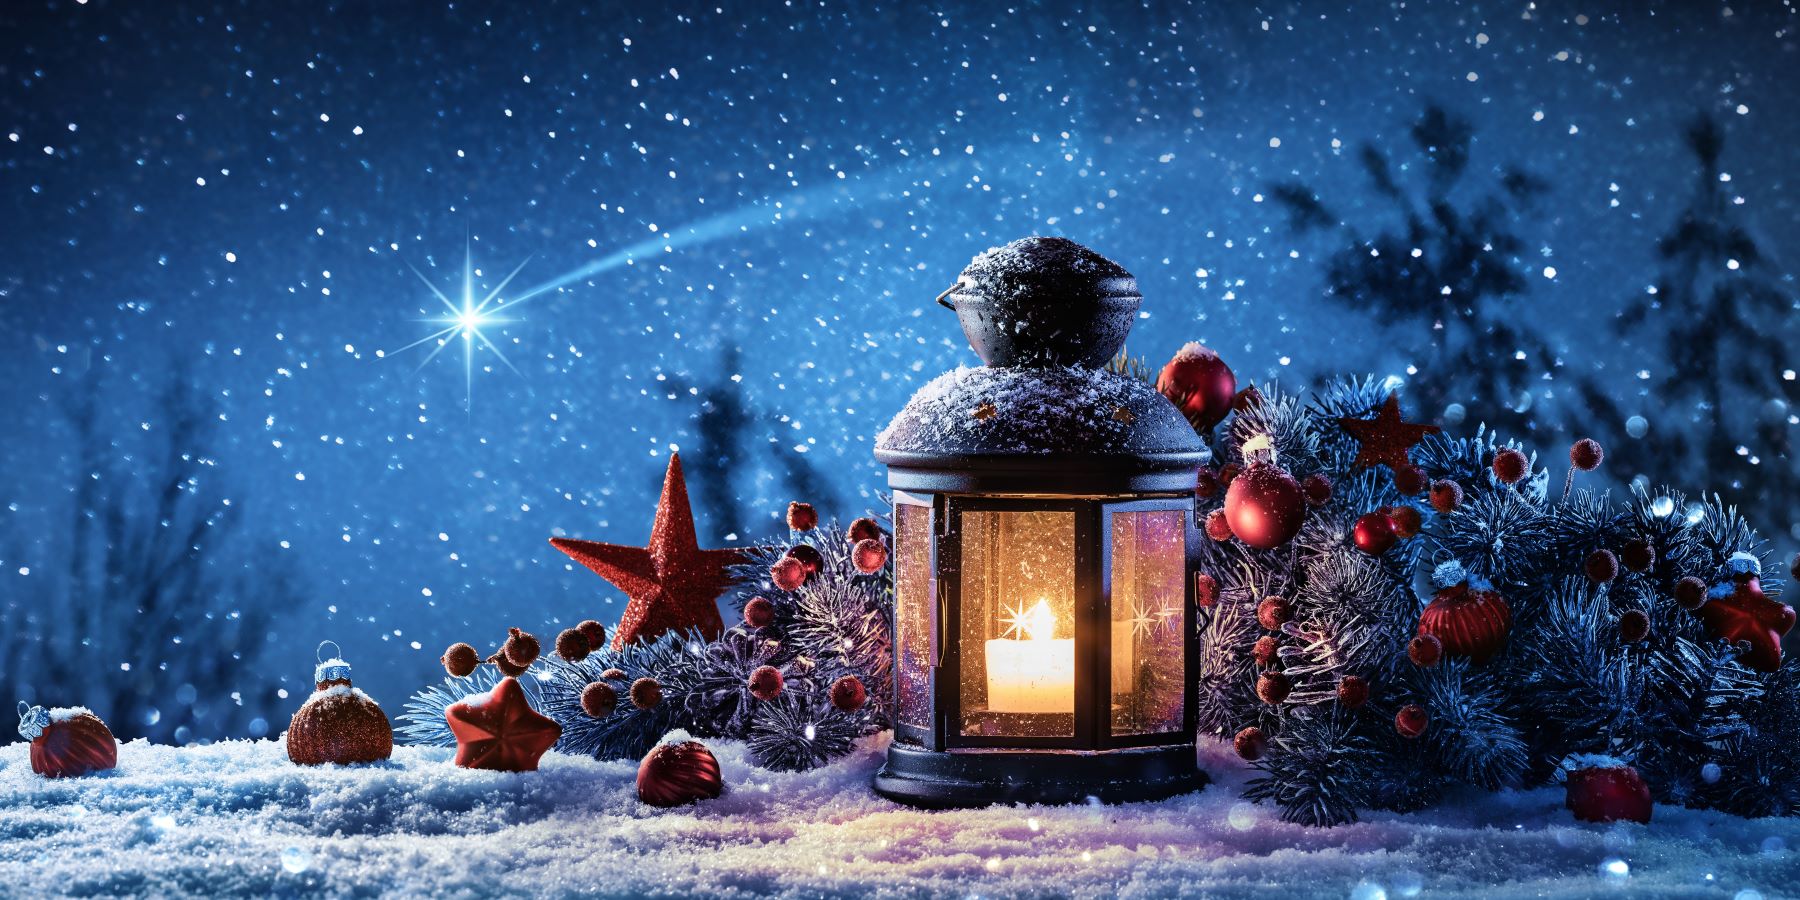 Un candelabro en medio de la nieve. Hay adornos navideños al rededor y una estrella que simboliza a Belén. 